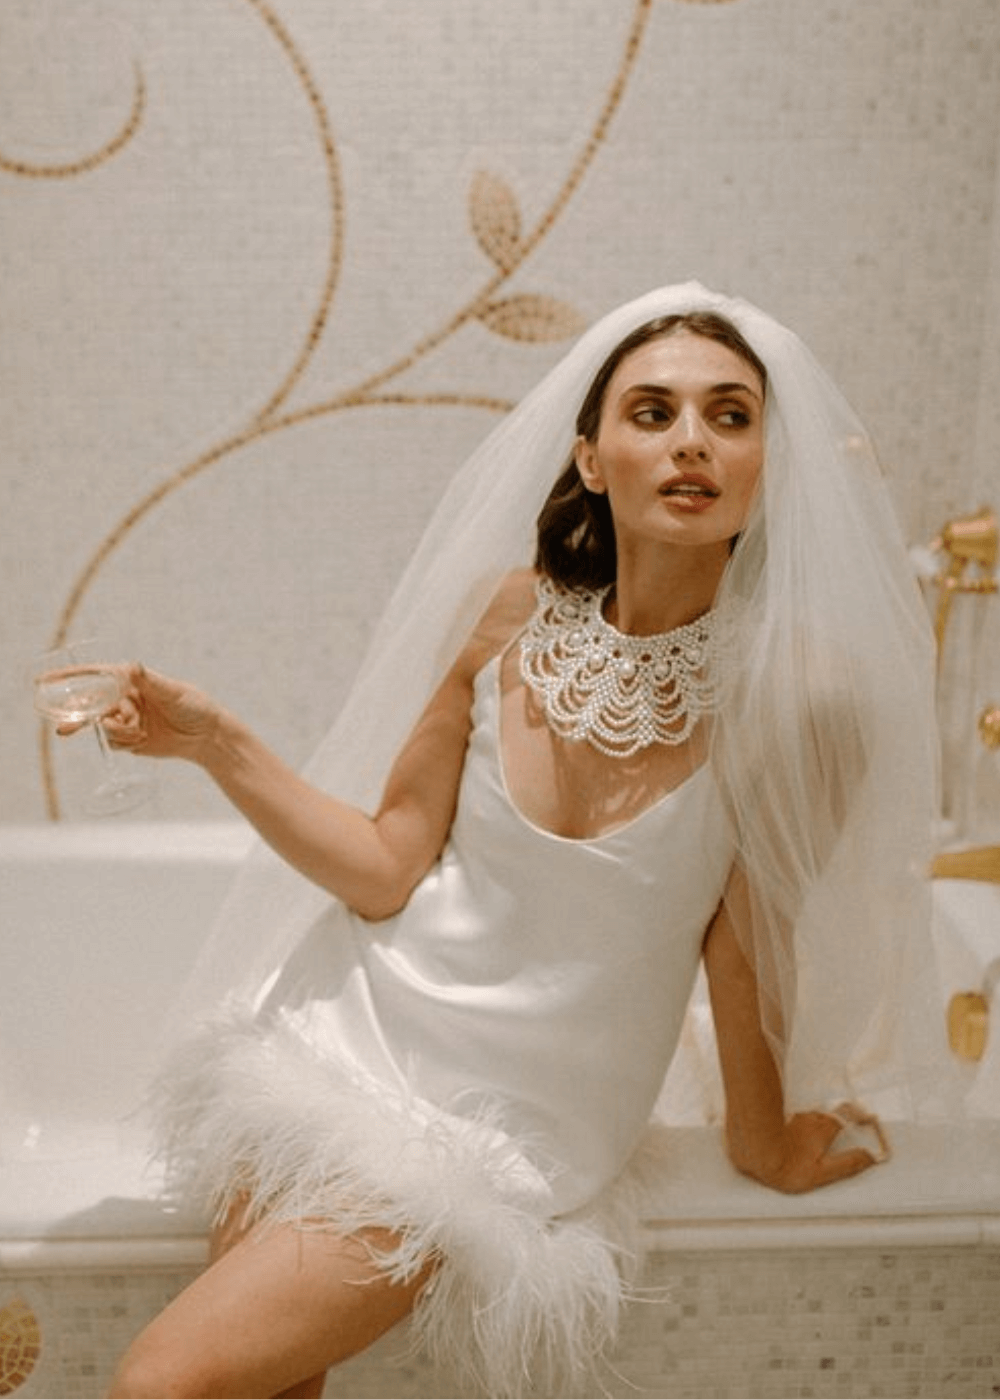 N/A - vestido branco com plumas na barra - vestido de noiva curto - verão - mulher sentada em uma banheira usando um vestido de noiva curto - https://stealthelook.com.br